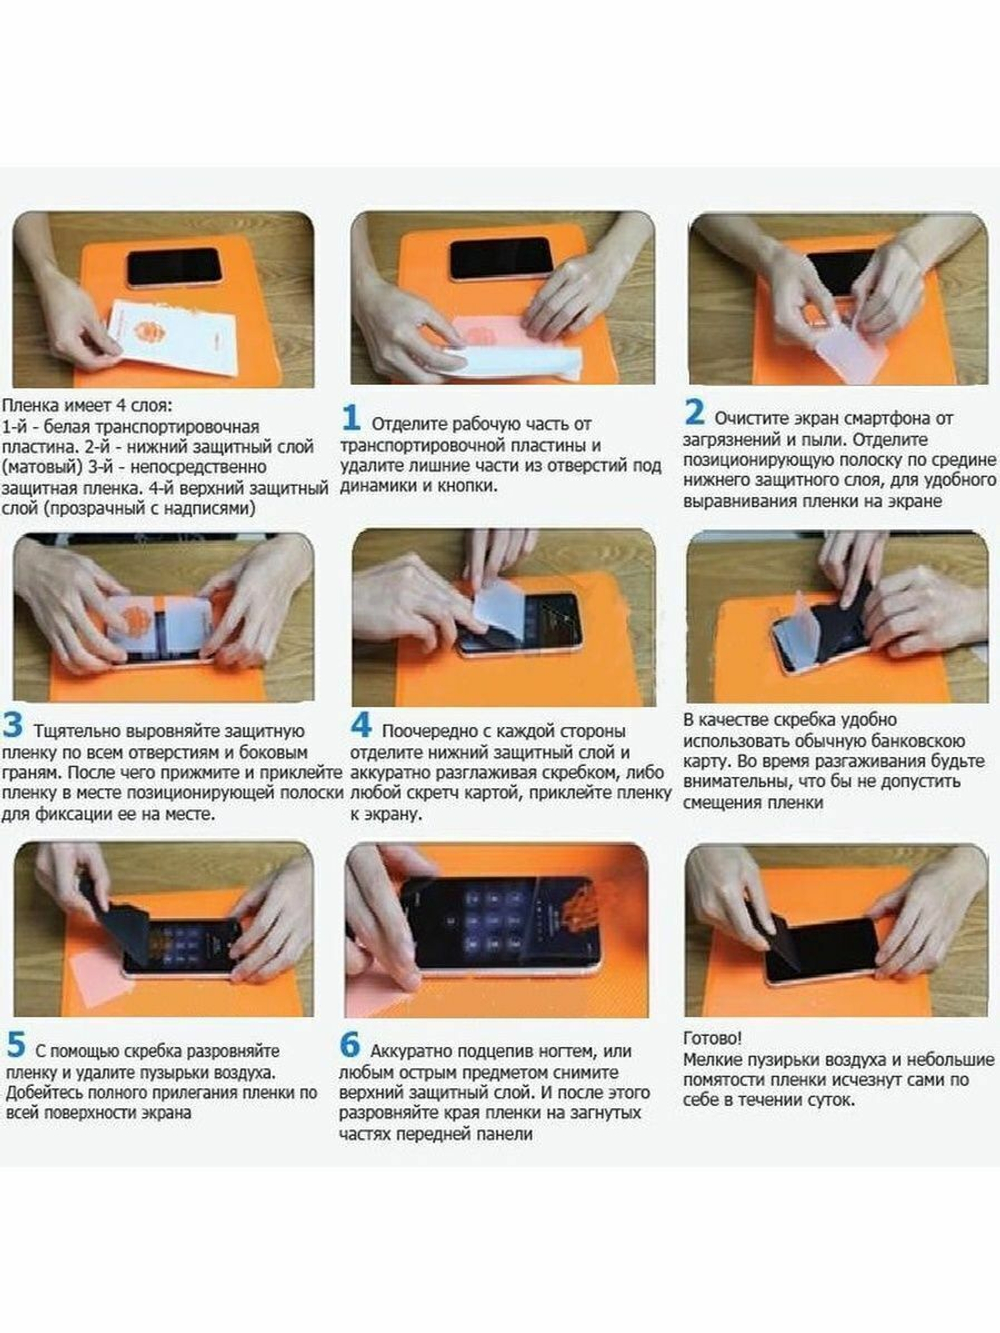 Защитная пленка гидрогелевая для Apple iPad 4 (самовосстанавливающаяся матовая)